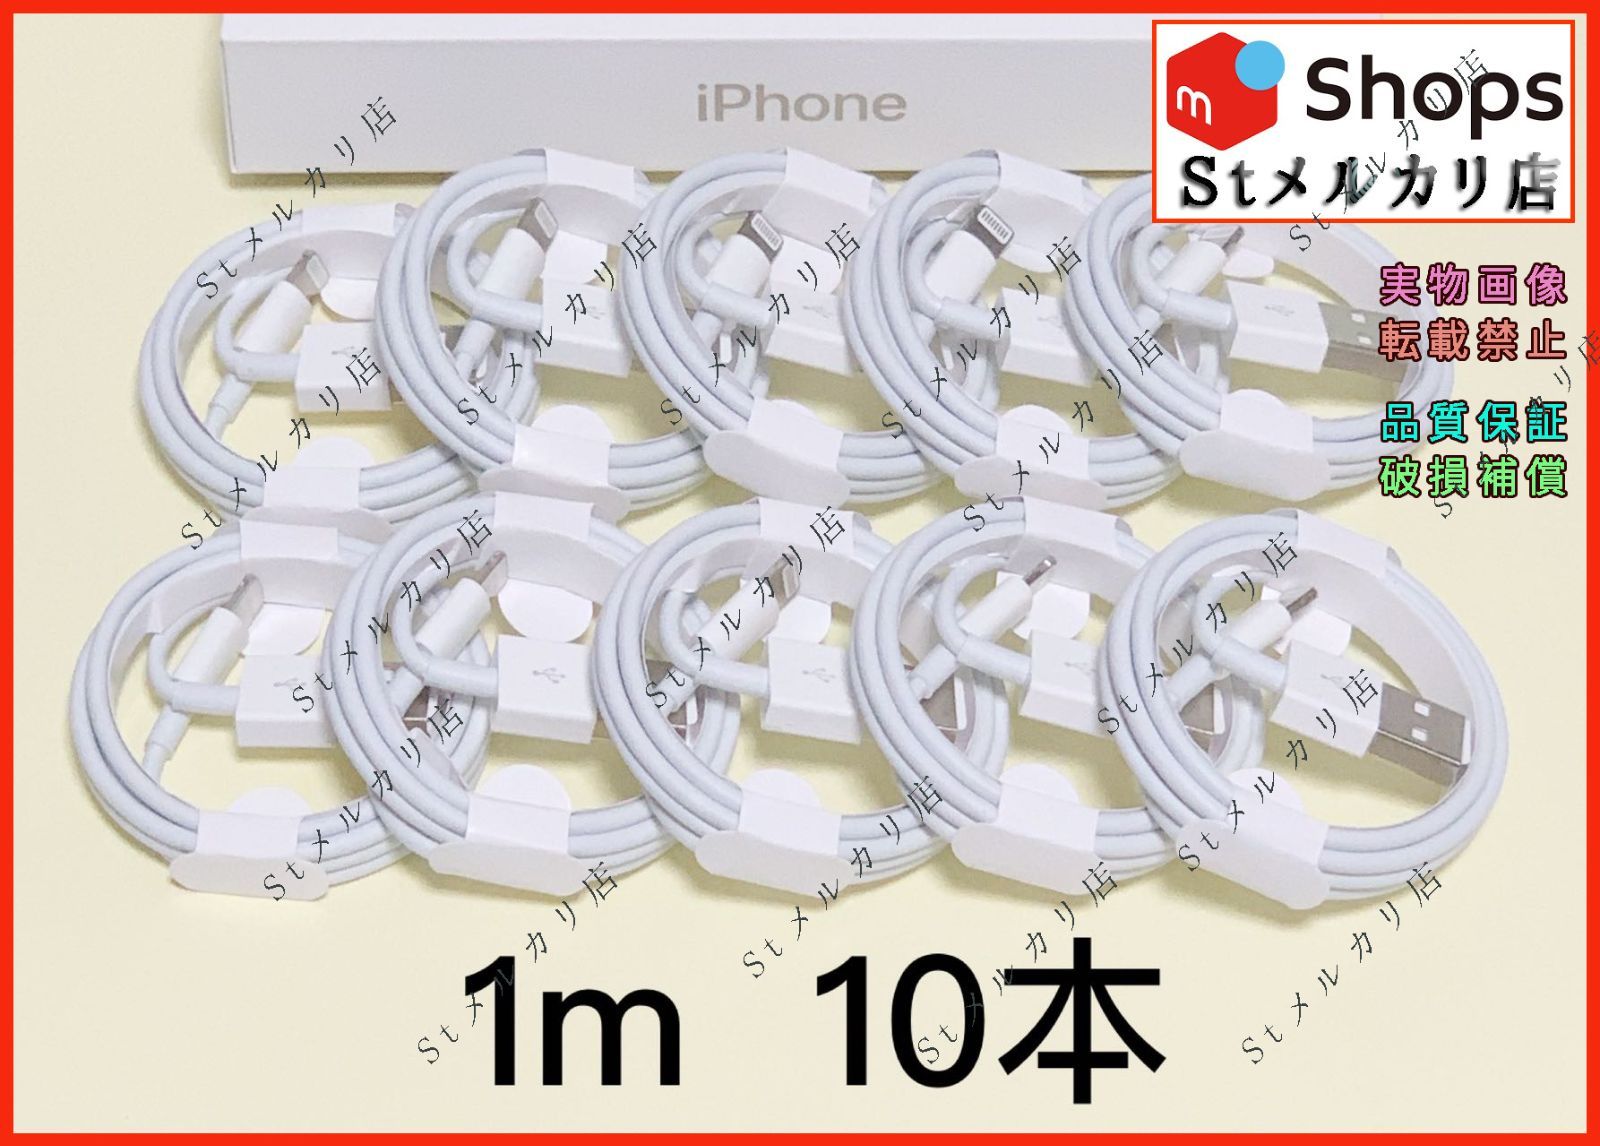 10本 1m iPhone ライトニングケーブル 充電器 アイフォン USBケーブル